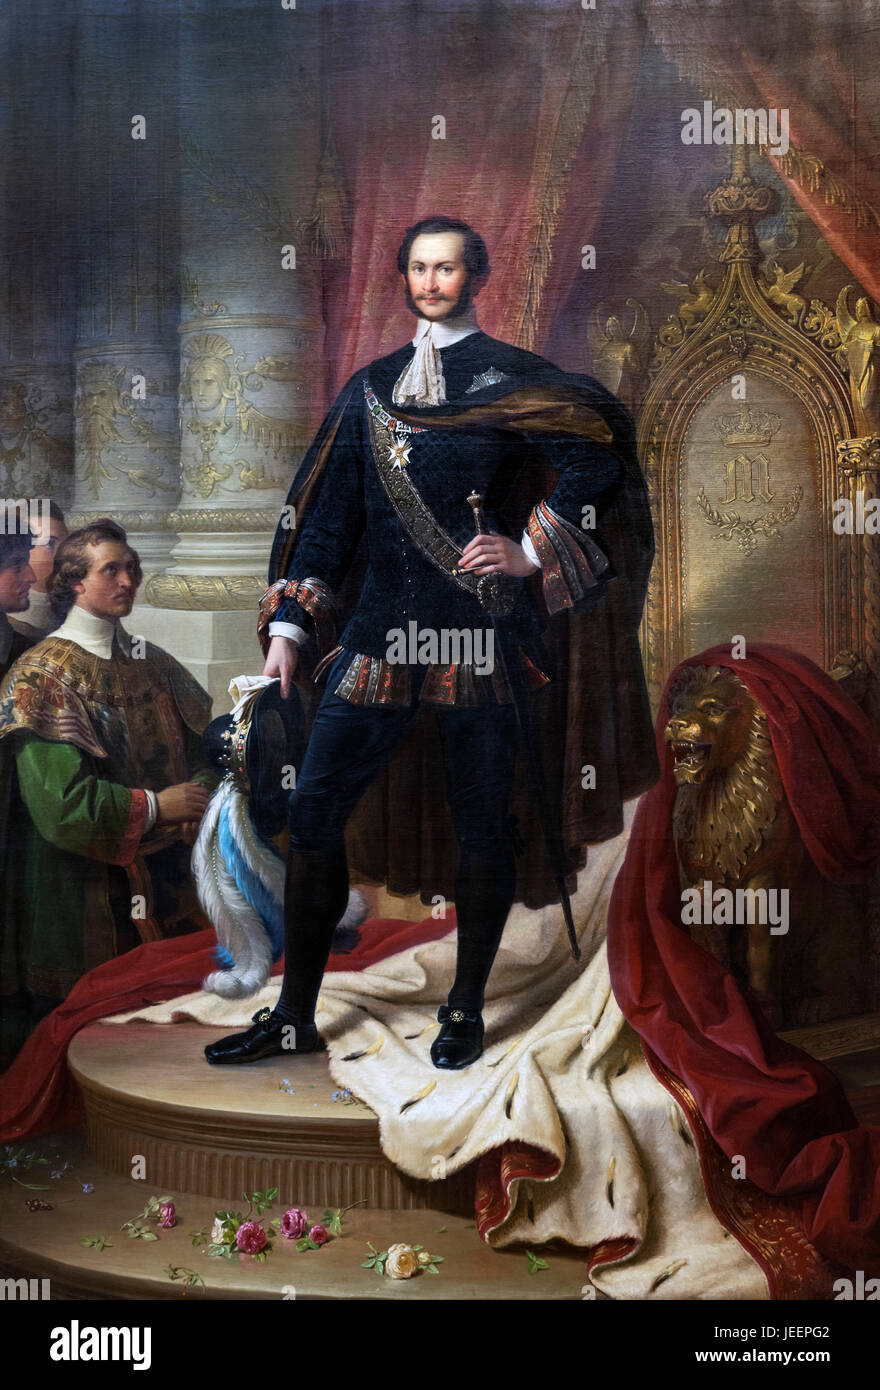 Le roi Maximilien II (1811-1864), habillé comme un chevalier de l'Ordre de St Hubert. Maximilien II a été roi de Bavière à partir de 1848-1864. Peinture de Wilhelm von Kaulbach, c.1854 Banque D'Images